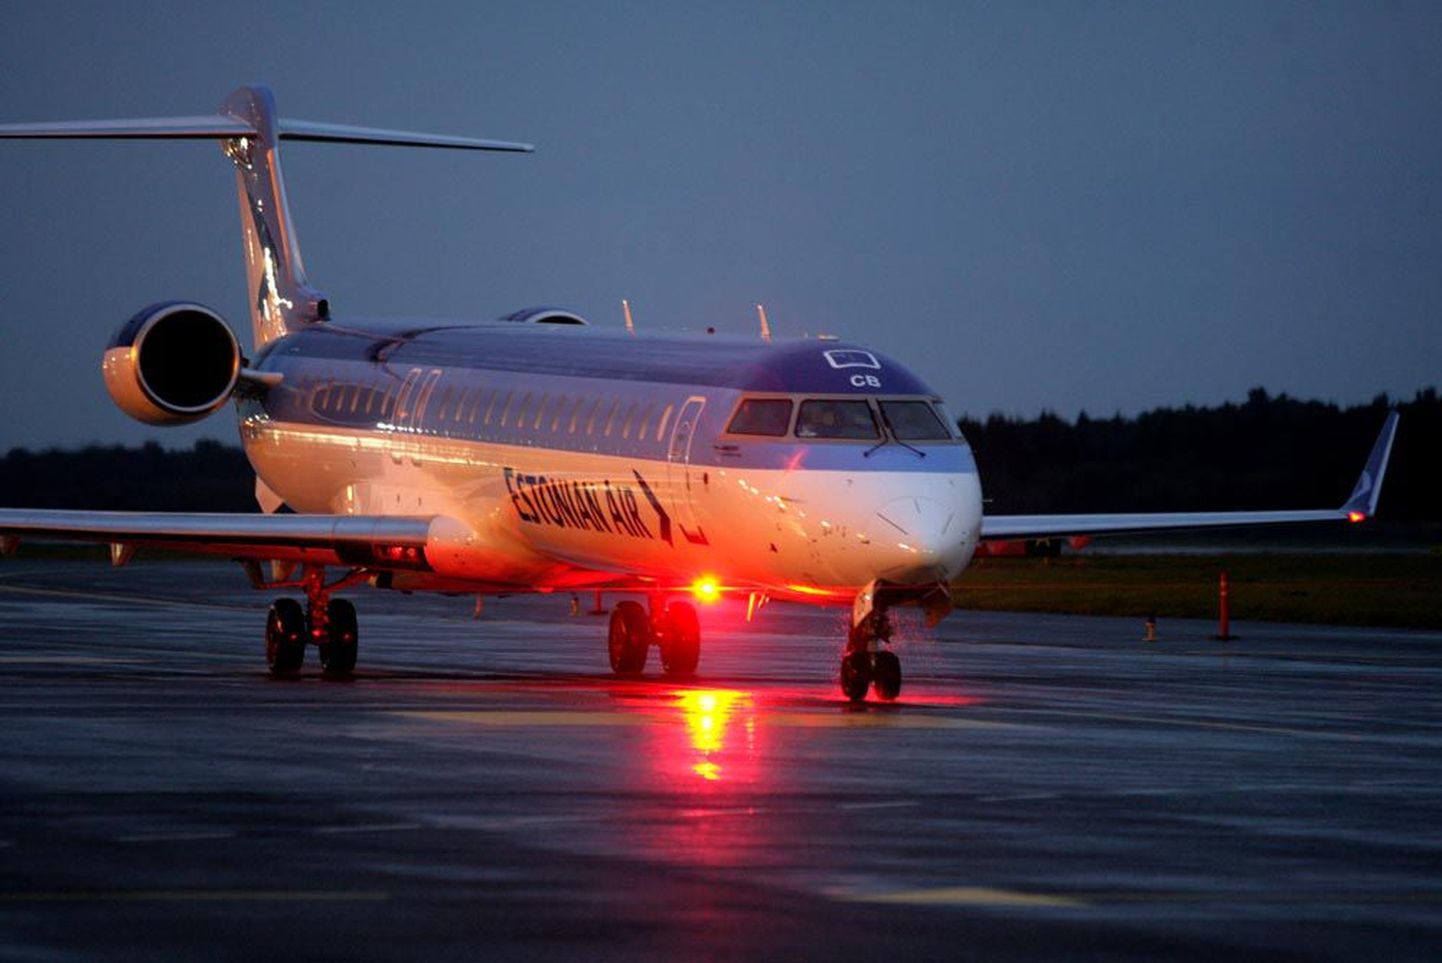 Estonian Airi uuel Bombardieril kahtlustati tehnilist riket, reisijad saadeti teele asenduslennukiga.